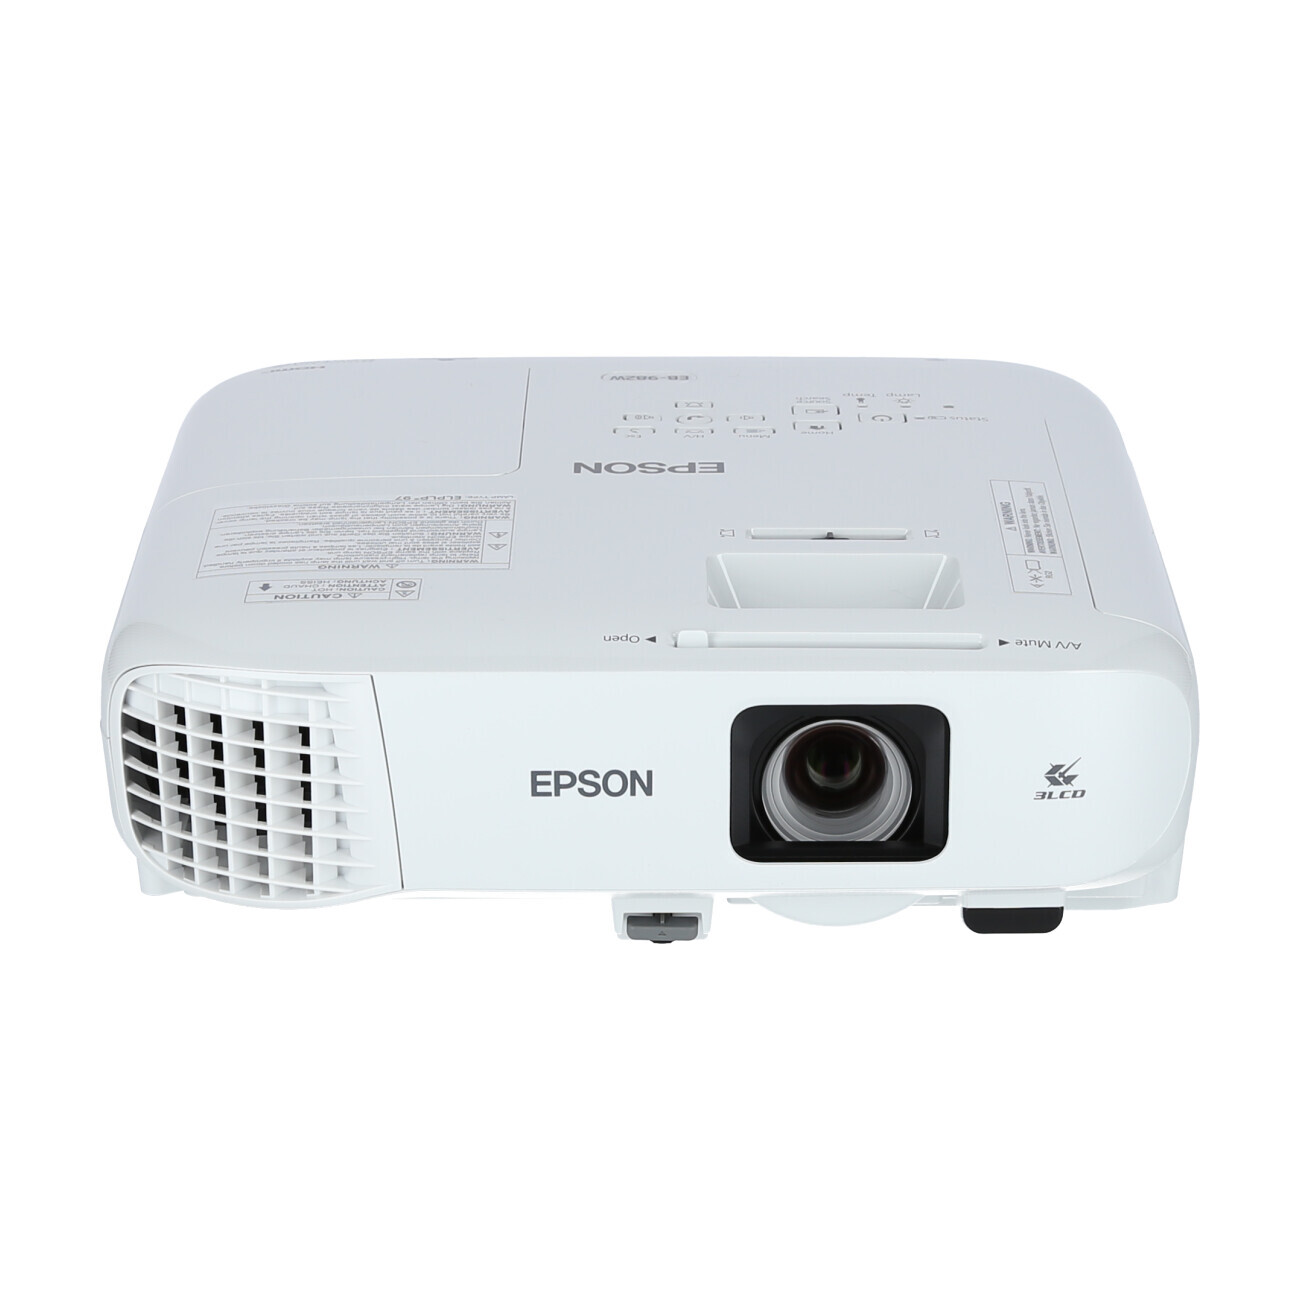 Vorschau: Epson EB-982W Businessbeamer mit 4200 Lumen und WXGA Auflösung - Demo